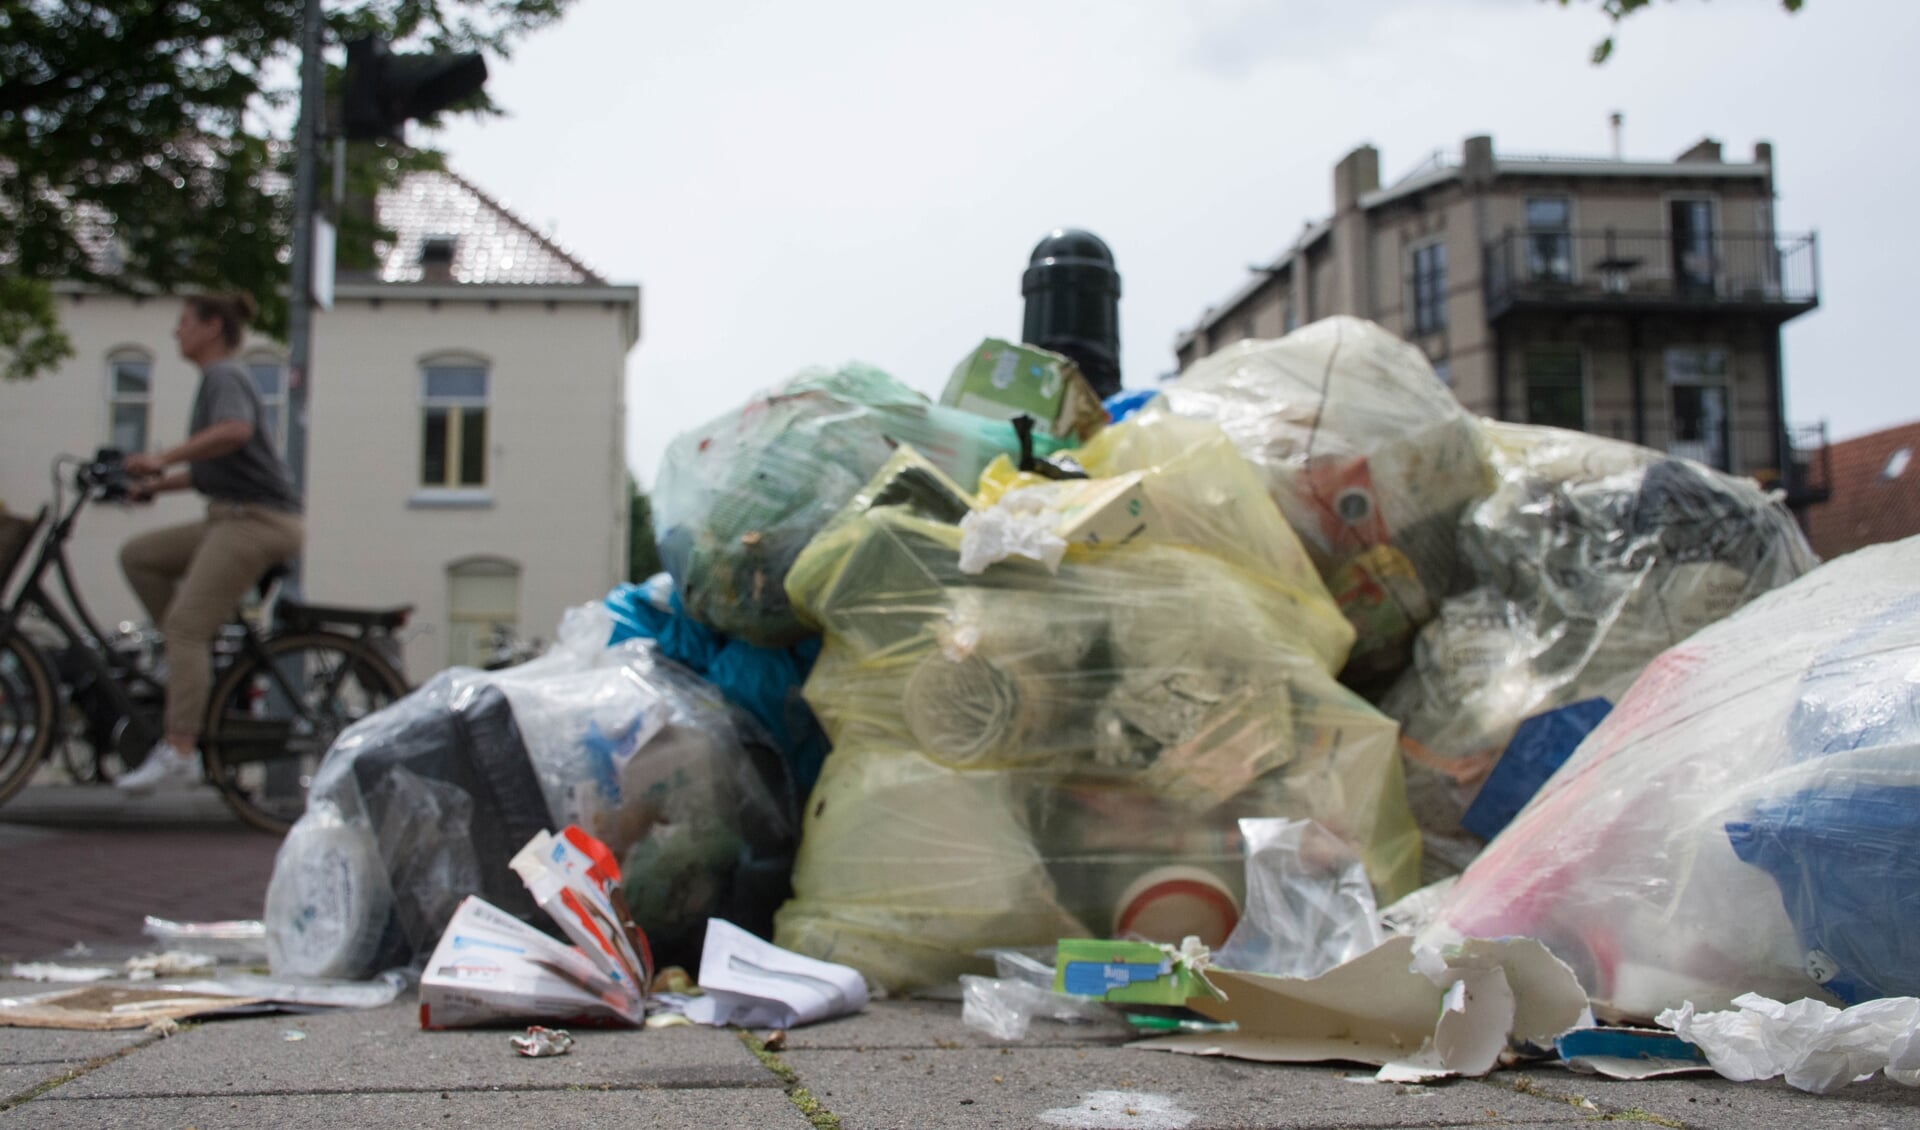 Regelmatig hopen de afvalbergen zich op ergens in Weesp.